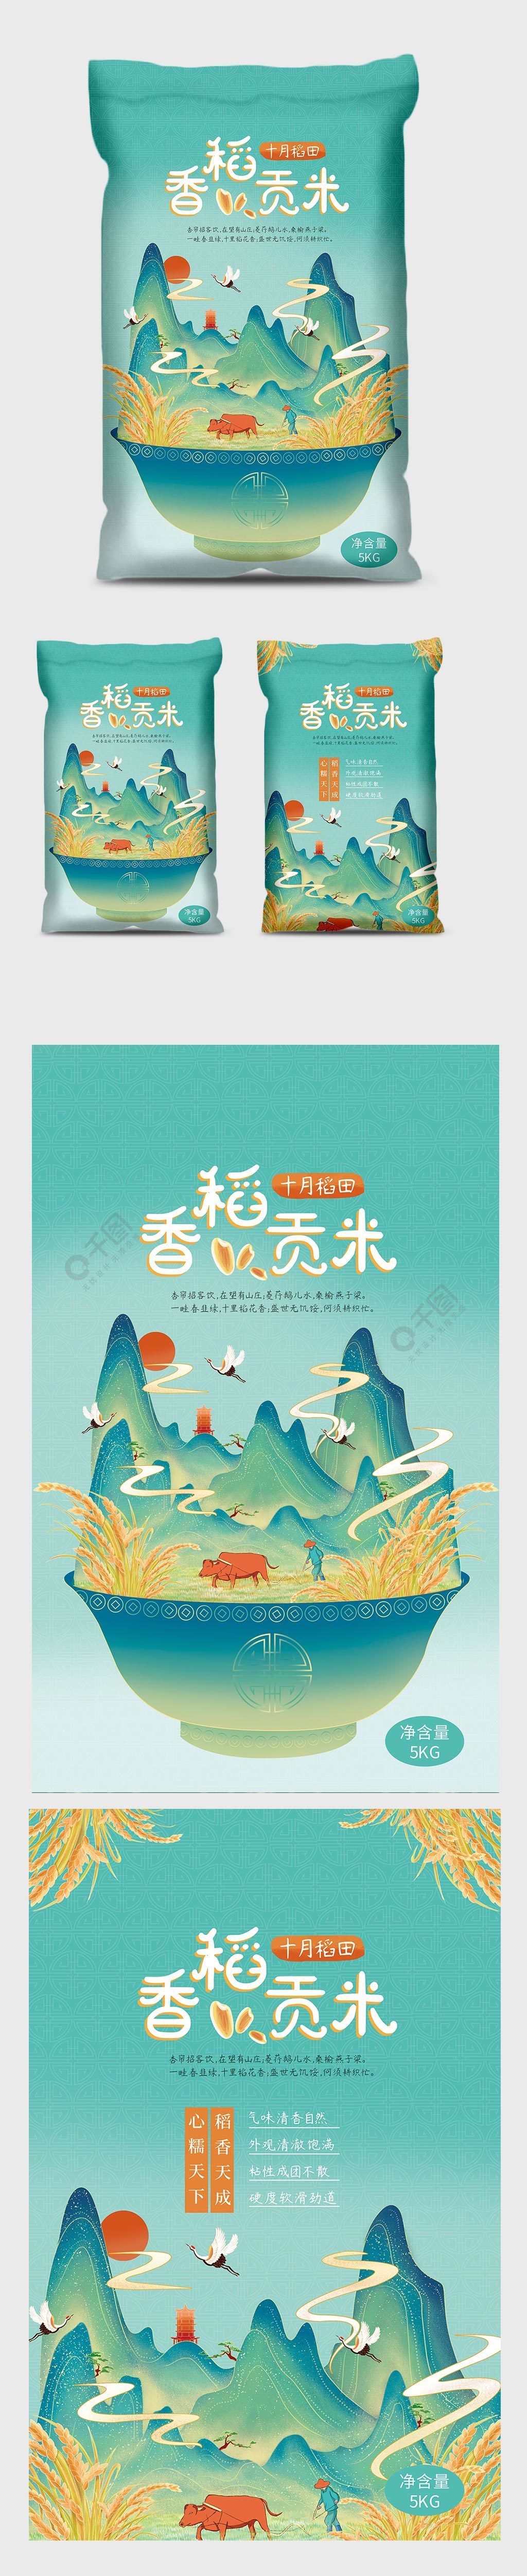 国潮插画风大米包装水稻山水大米插画包装袋1年前发布